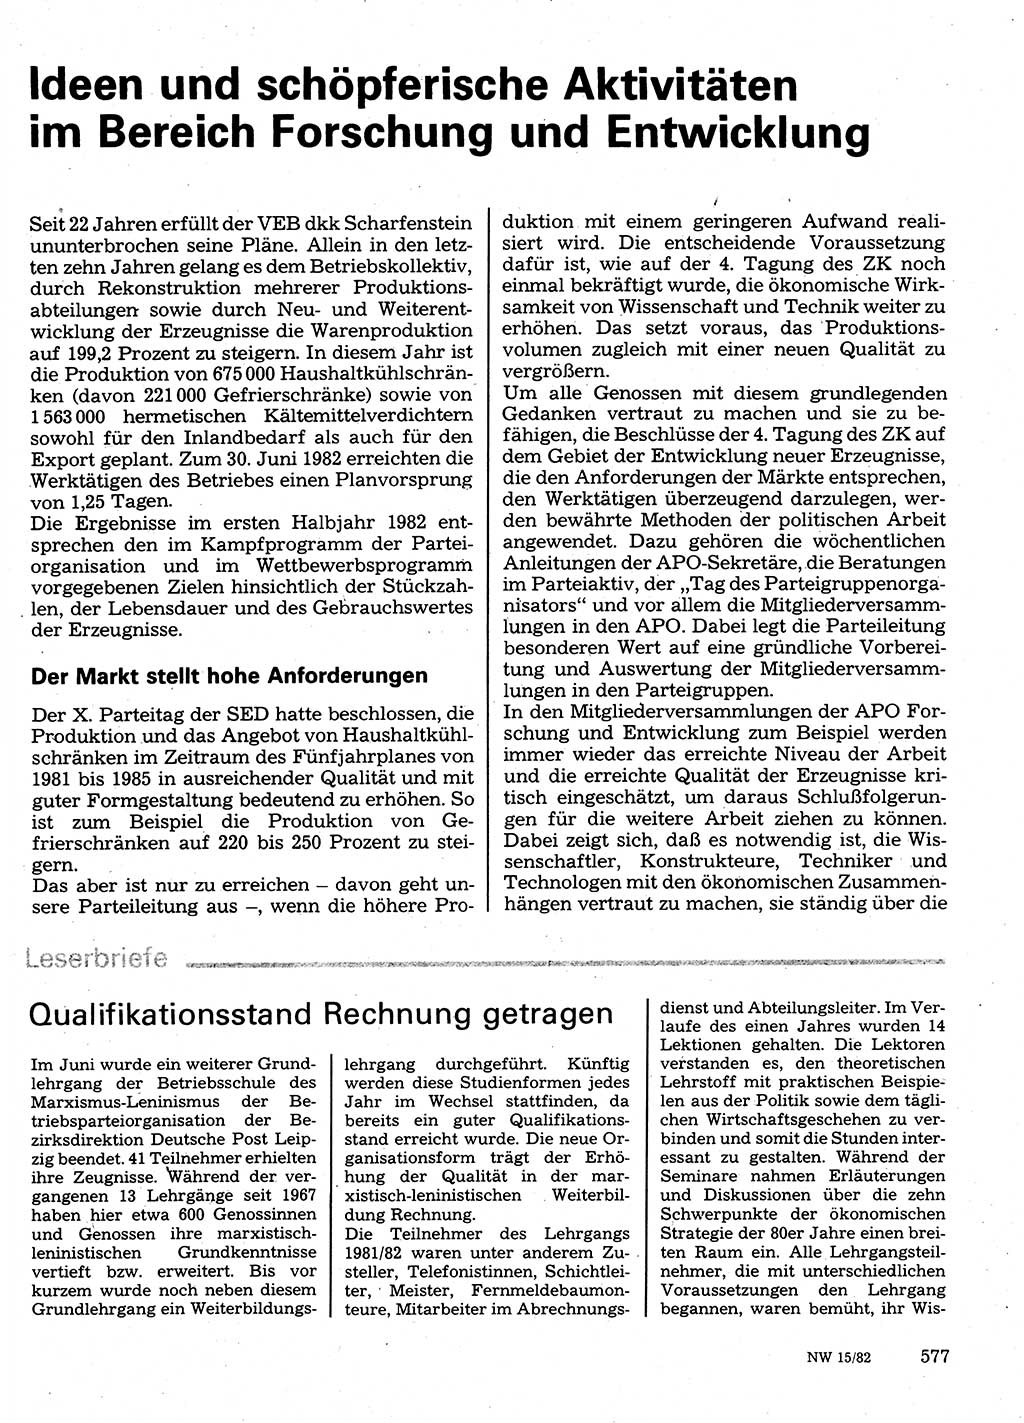 Neuer Weg (NW), Organ des Zentralkomitees (ZK) der SED (Sozialistische Einheitspartei Deutschlands) für Fragen des Parteilebens, 37. Jahrgang [Deutsche Demokratische Republik (DDR)] 1982, Seite 577 (NW ZK SED DDR 1982, S. 577)